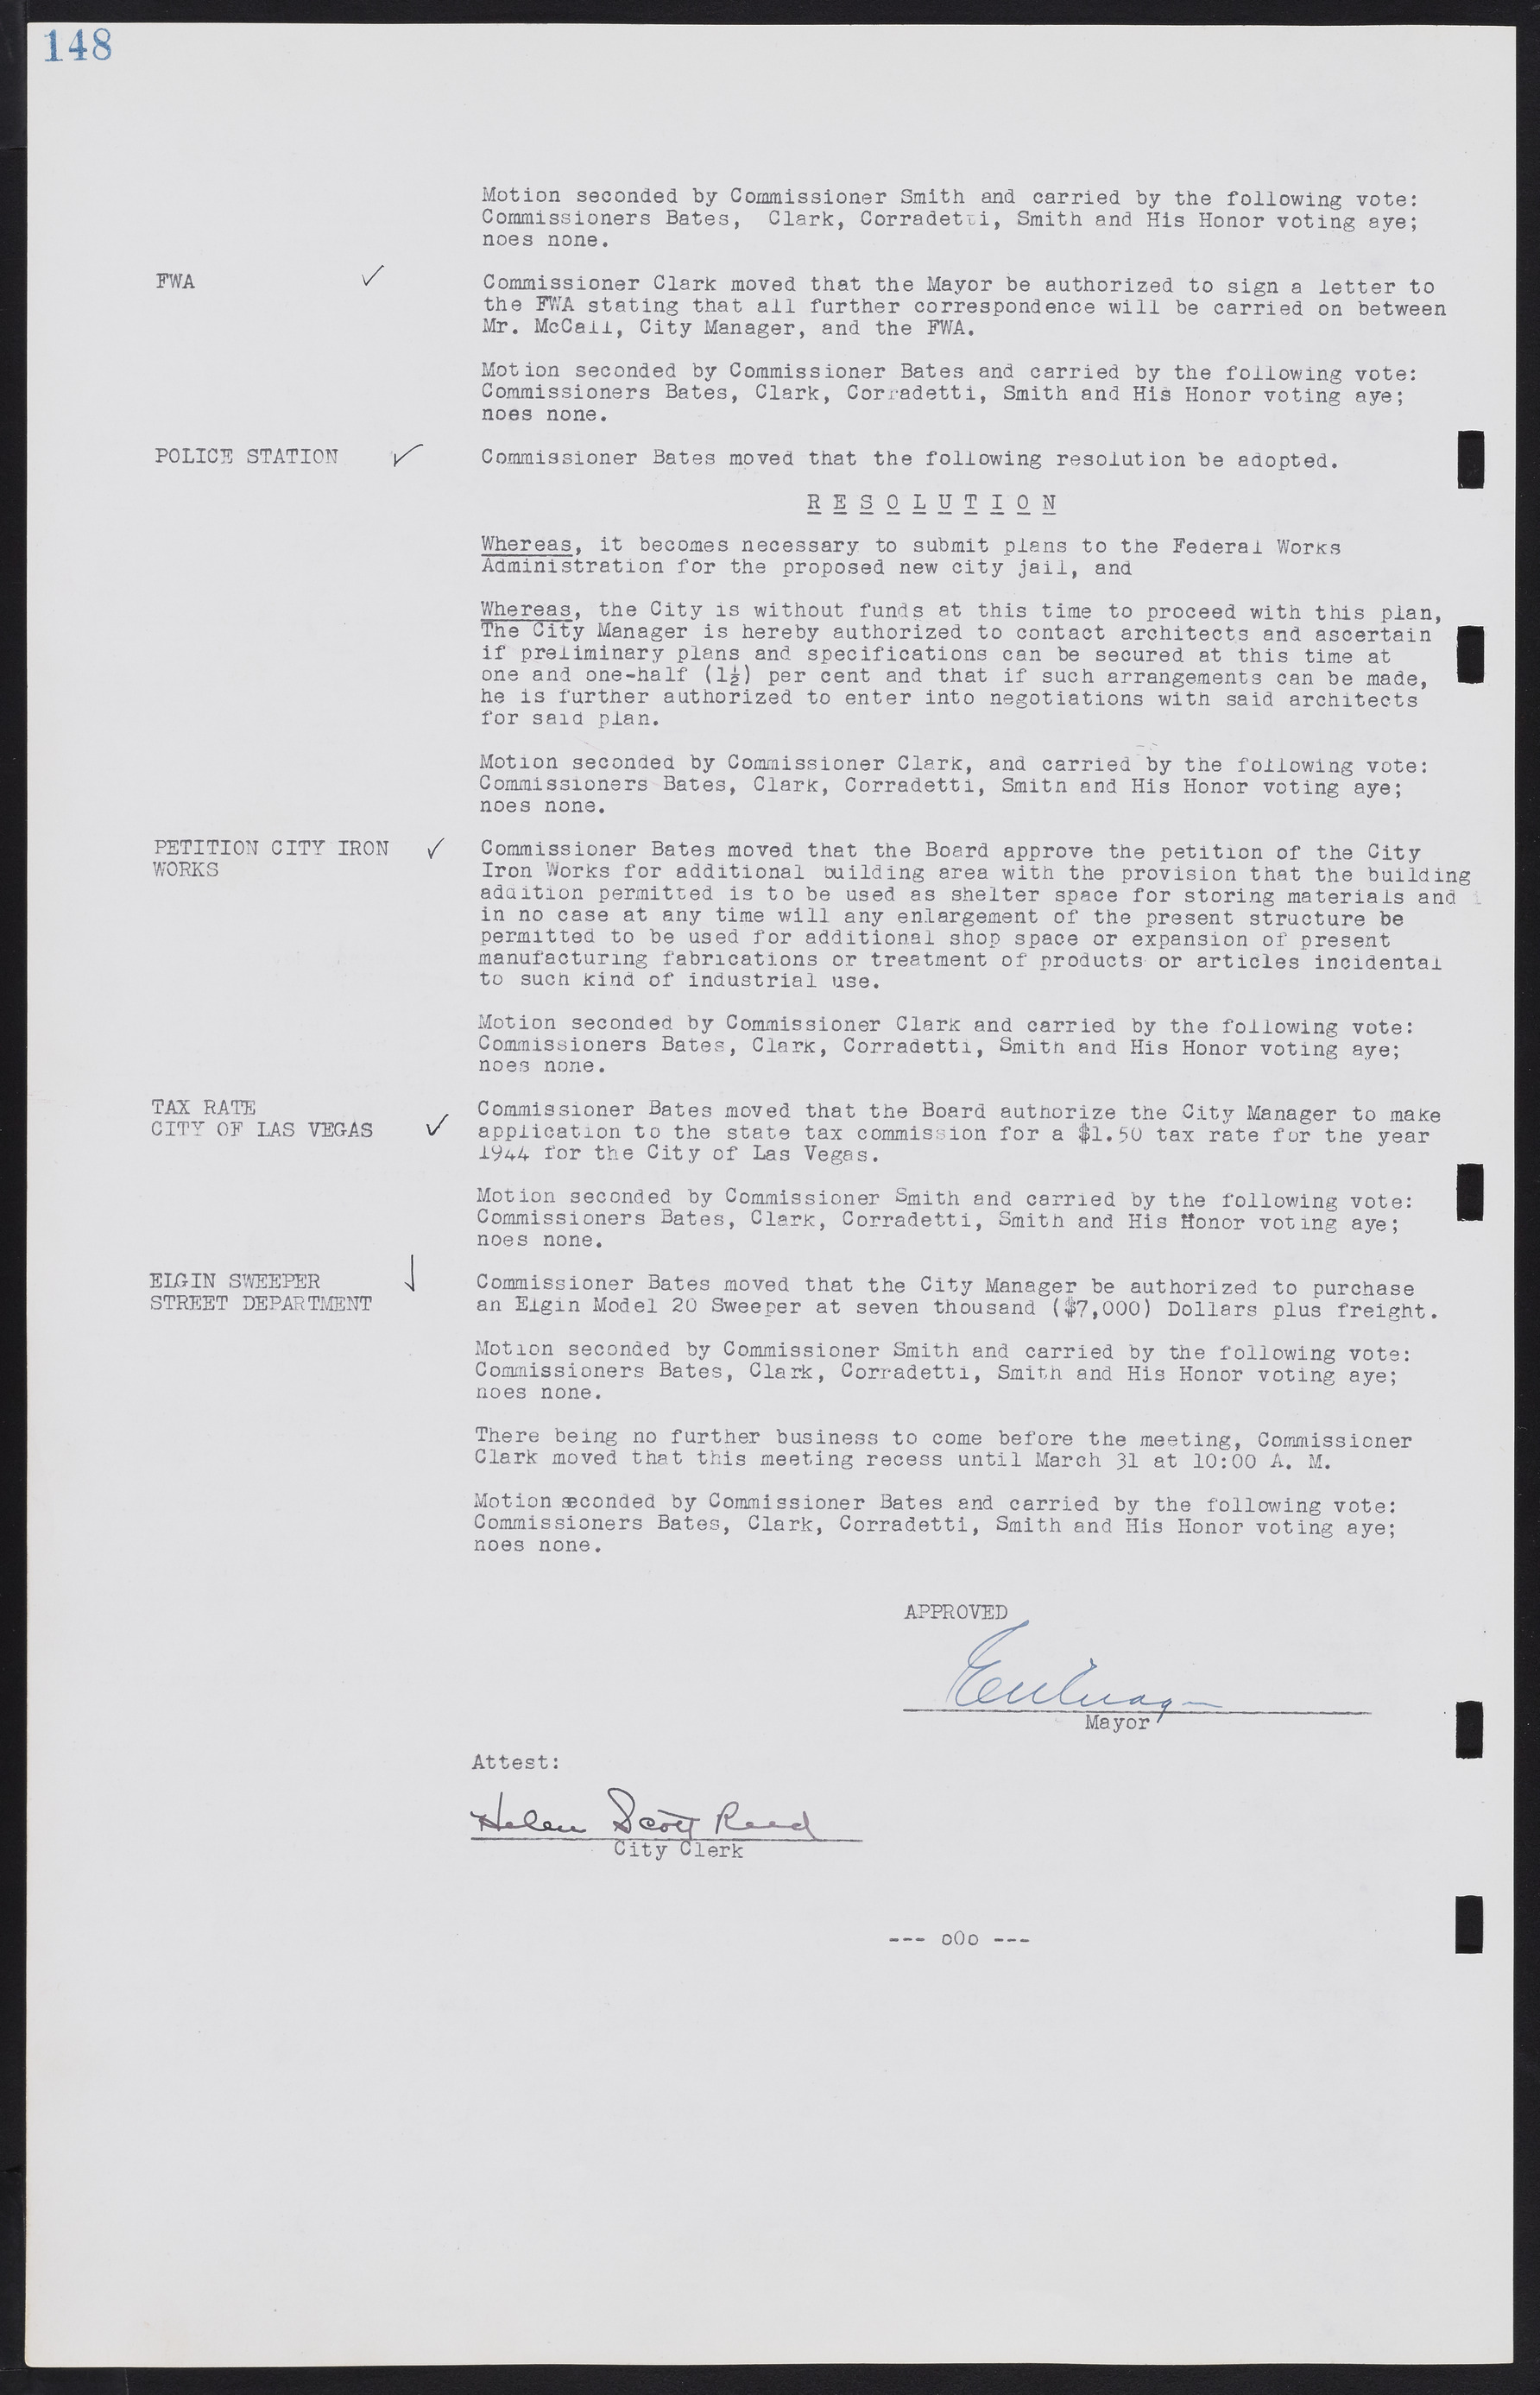 Las Vegas City Commission Minutes, August 11, 1942 to December 30, 1946, lvc000005-165